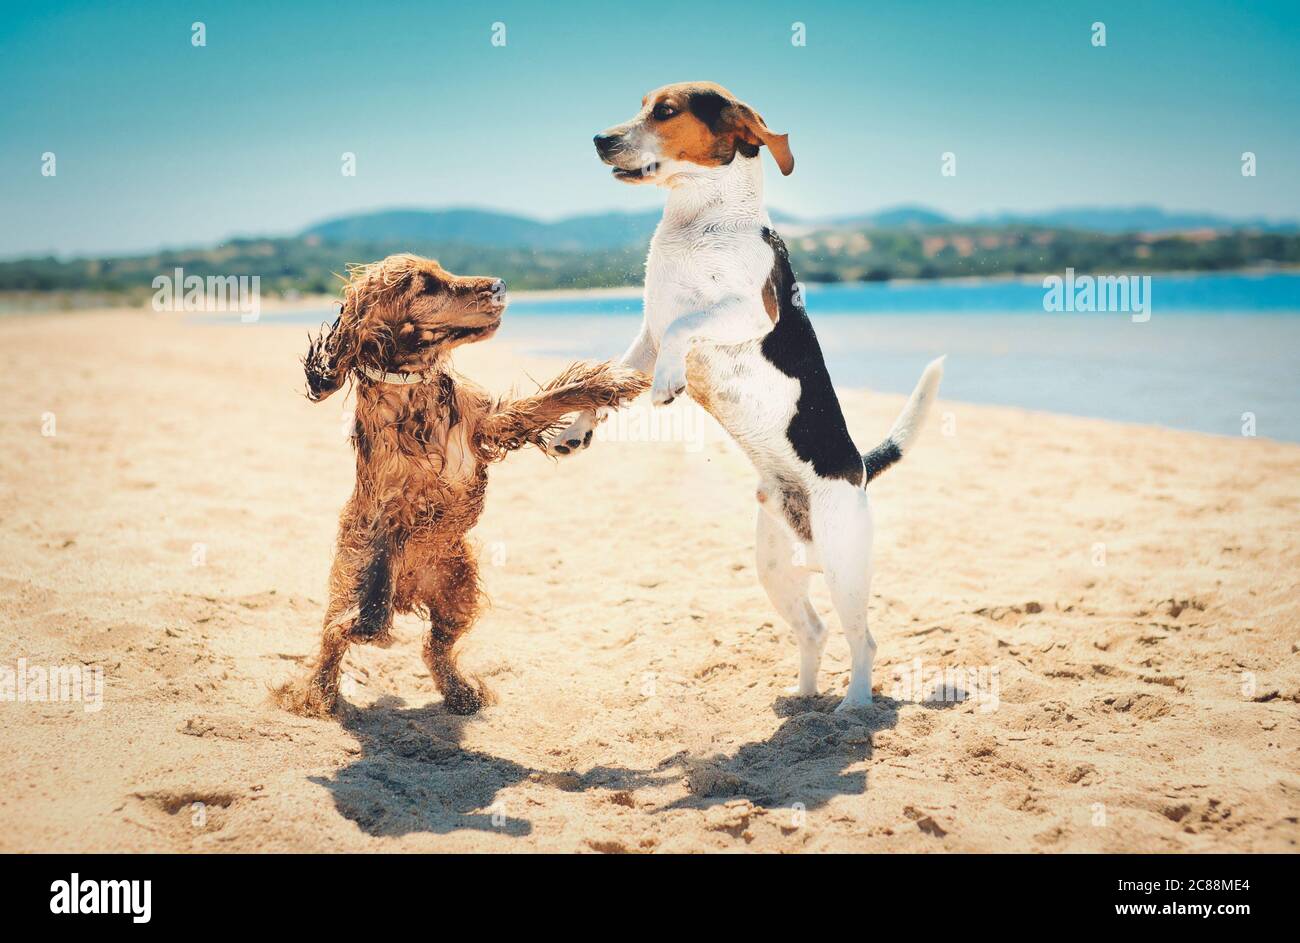 Schöne Aufnahme von zwei Hunden stehen aufrecht und tanzen zusammen Am  Strand Stockfotografie - Alamy